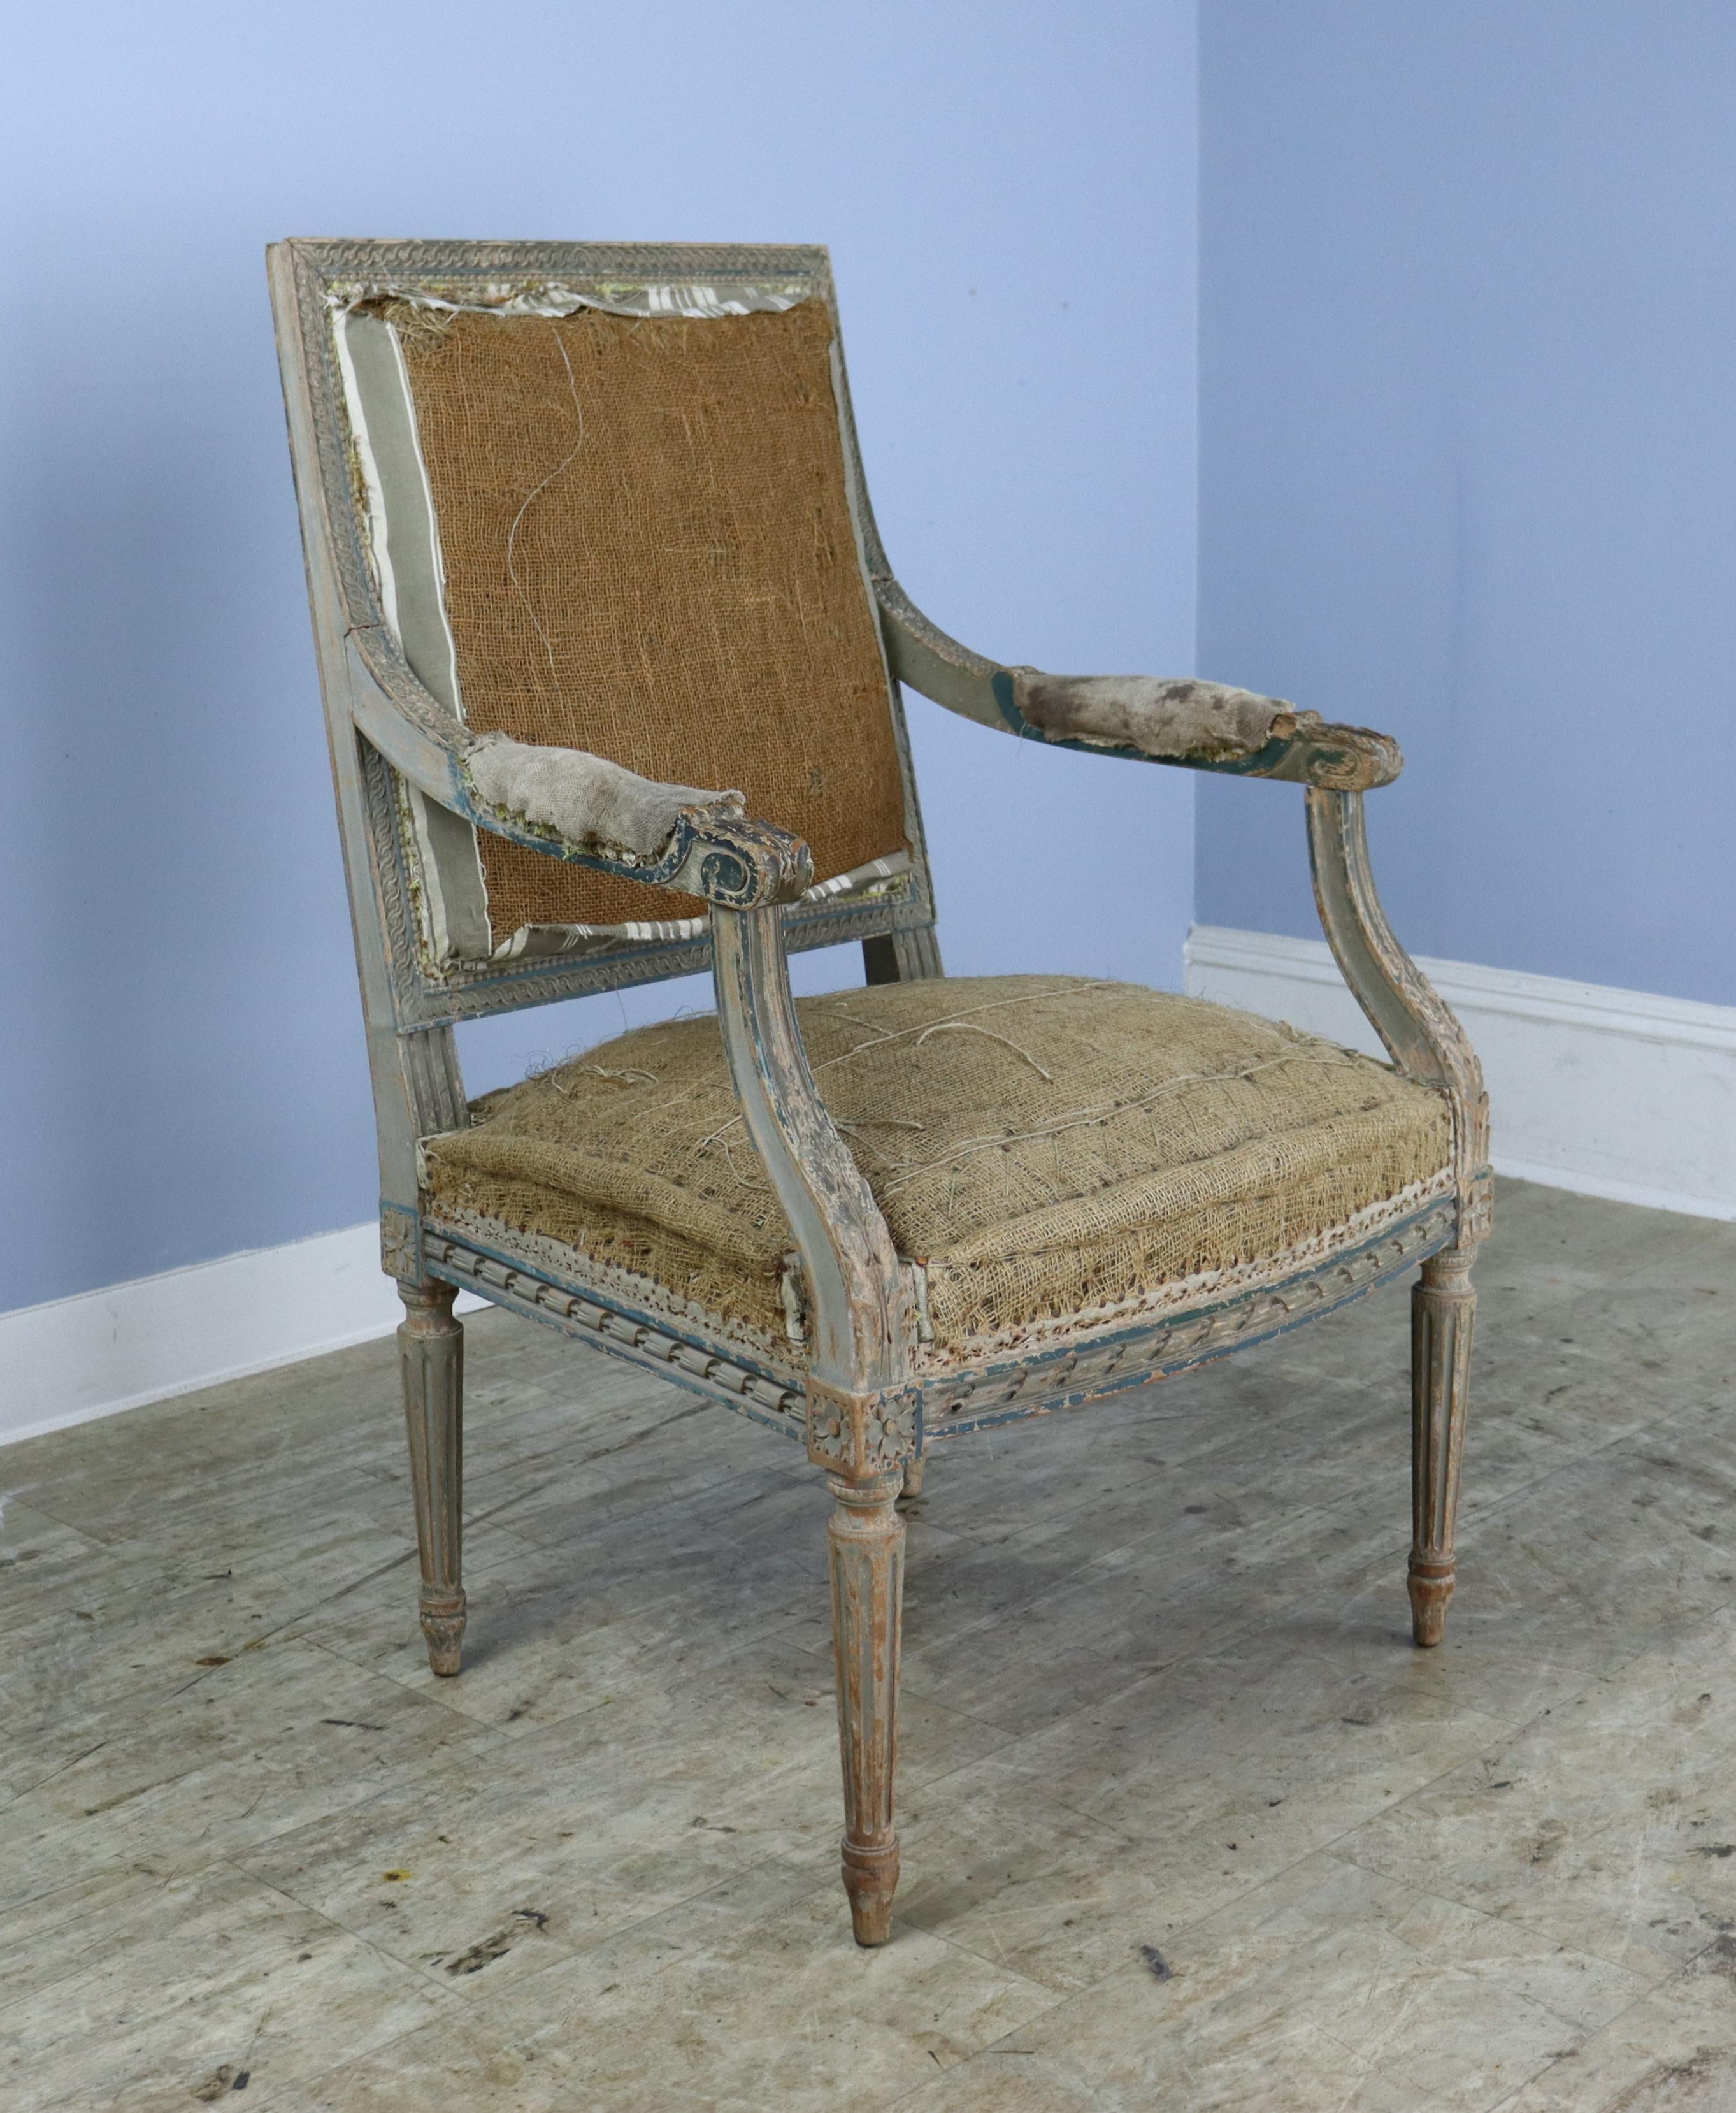 Vier stattliche und elegante Louis XVL-Sessel mit verblichener Originalfarbe und mit Rosshaar gepolsterten Sitzen.  Wir haben eine neu gepolstert, um die Vorstellungskraft zu unterstützen und die komplizierten Sehnsüchte und das Spektrum der